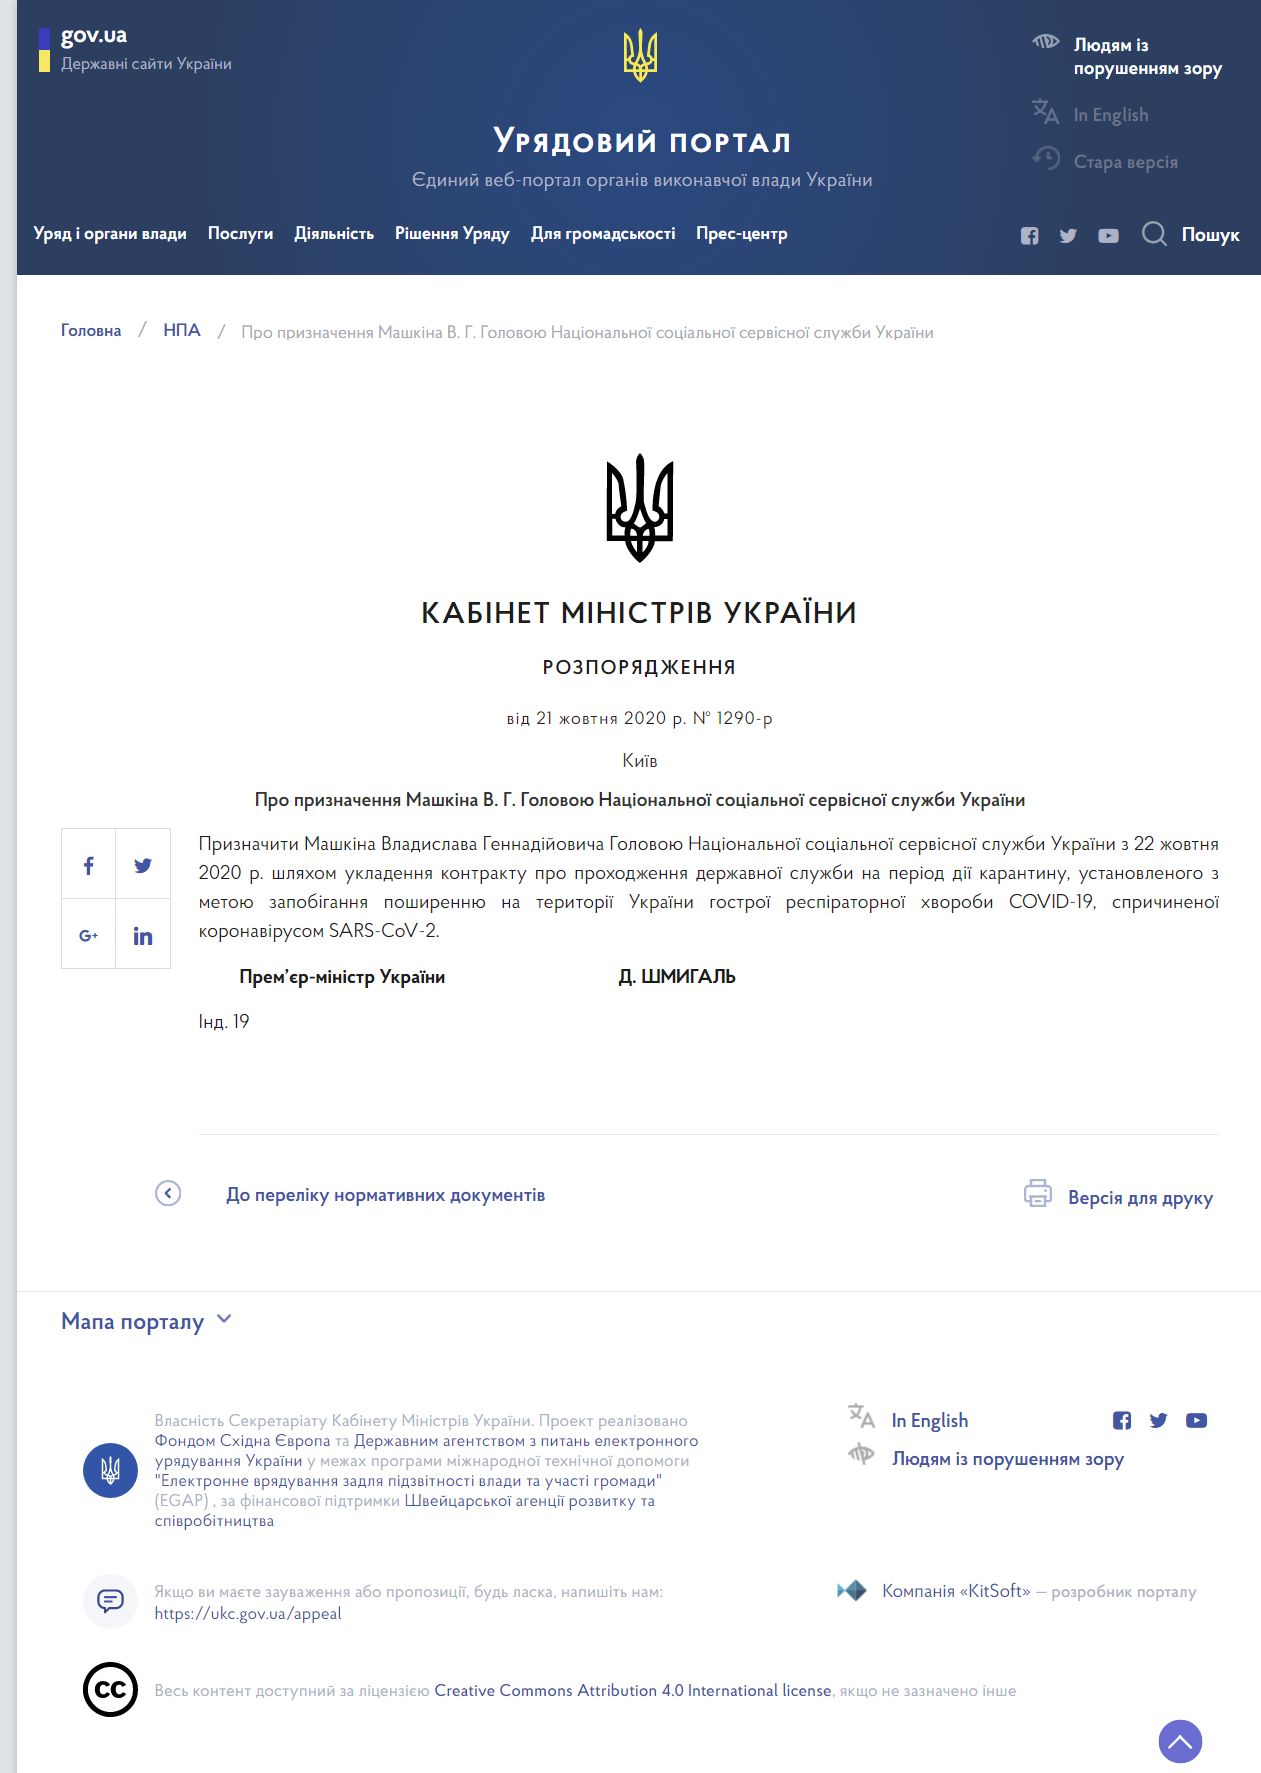 https://www.kmu.gov.ua/npas/pro-priznachennya-mashkina-v-g-golovoyu-nacionalnoyi-socialnoyi-servisnoyi-sluzhbi-ukrayini-i211020-1290